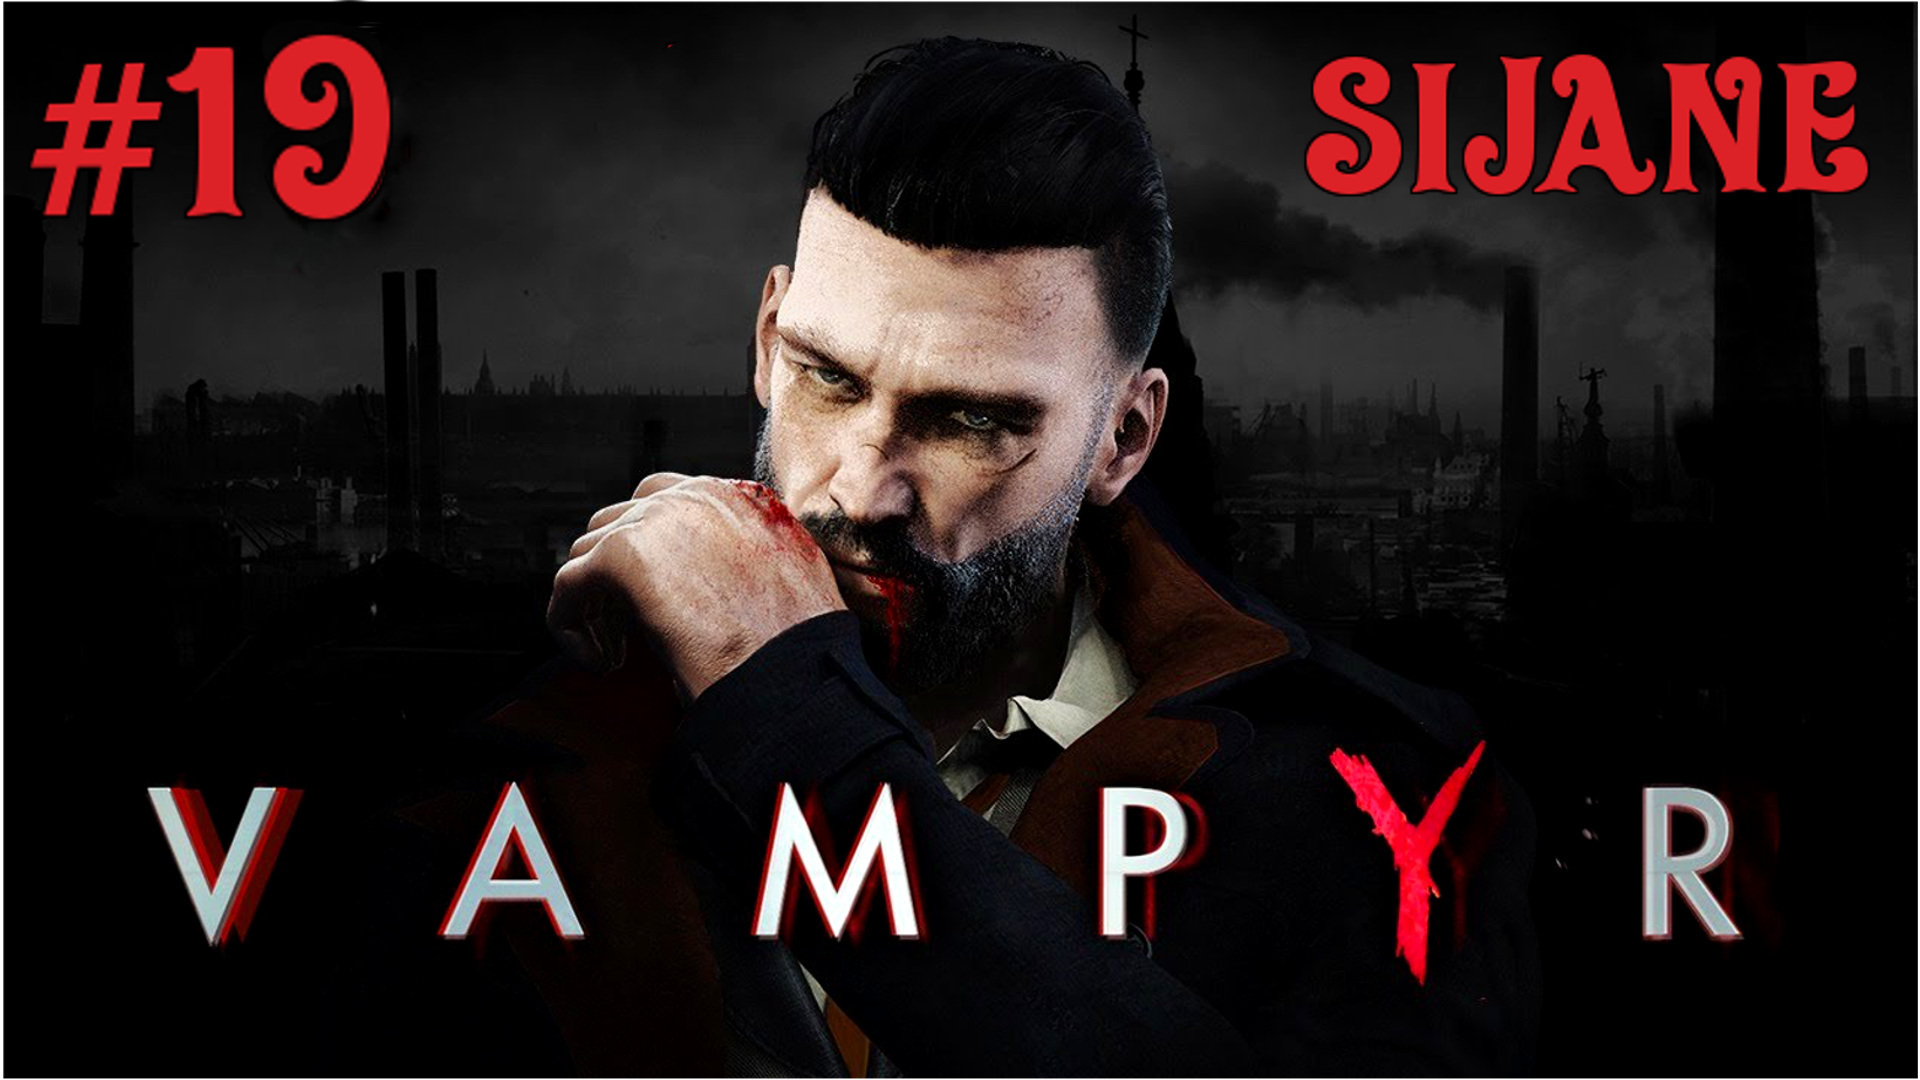 Vampyr #19